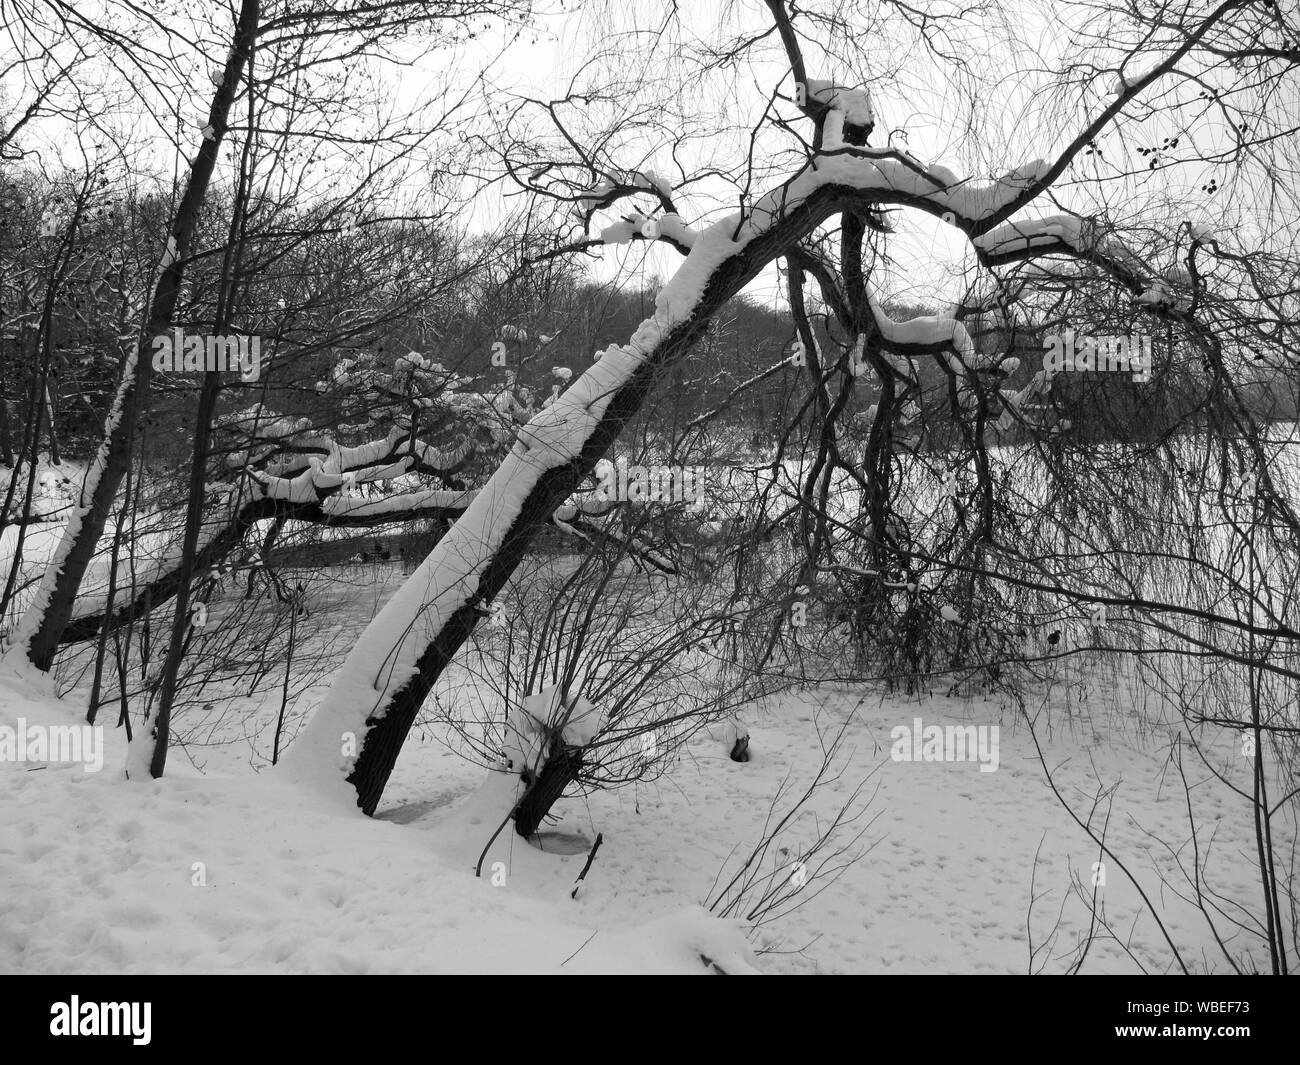 Froide journée d'hiver, snow-covered branches pendent dans le lac gelé Banque D'Images